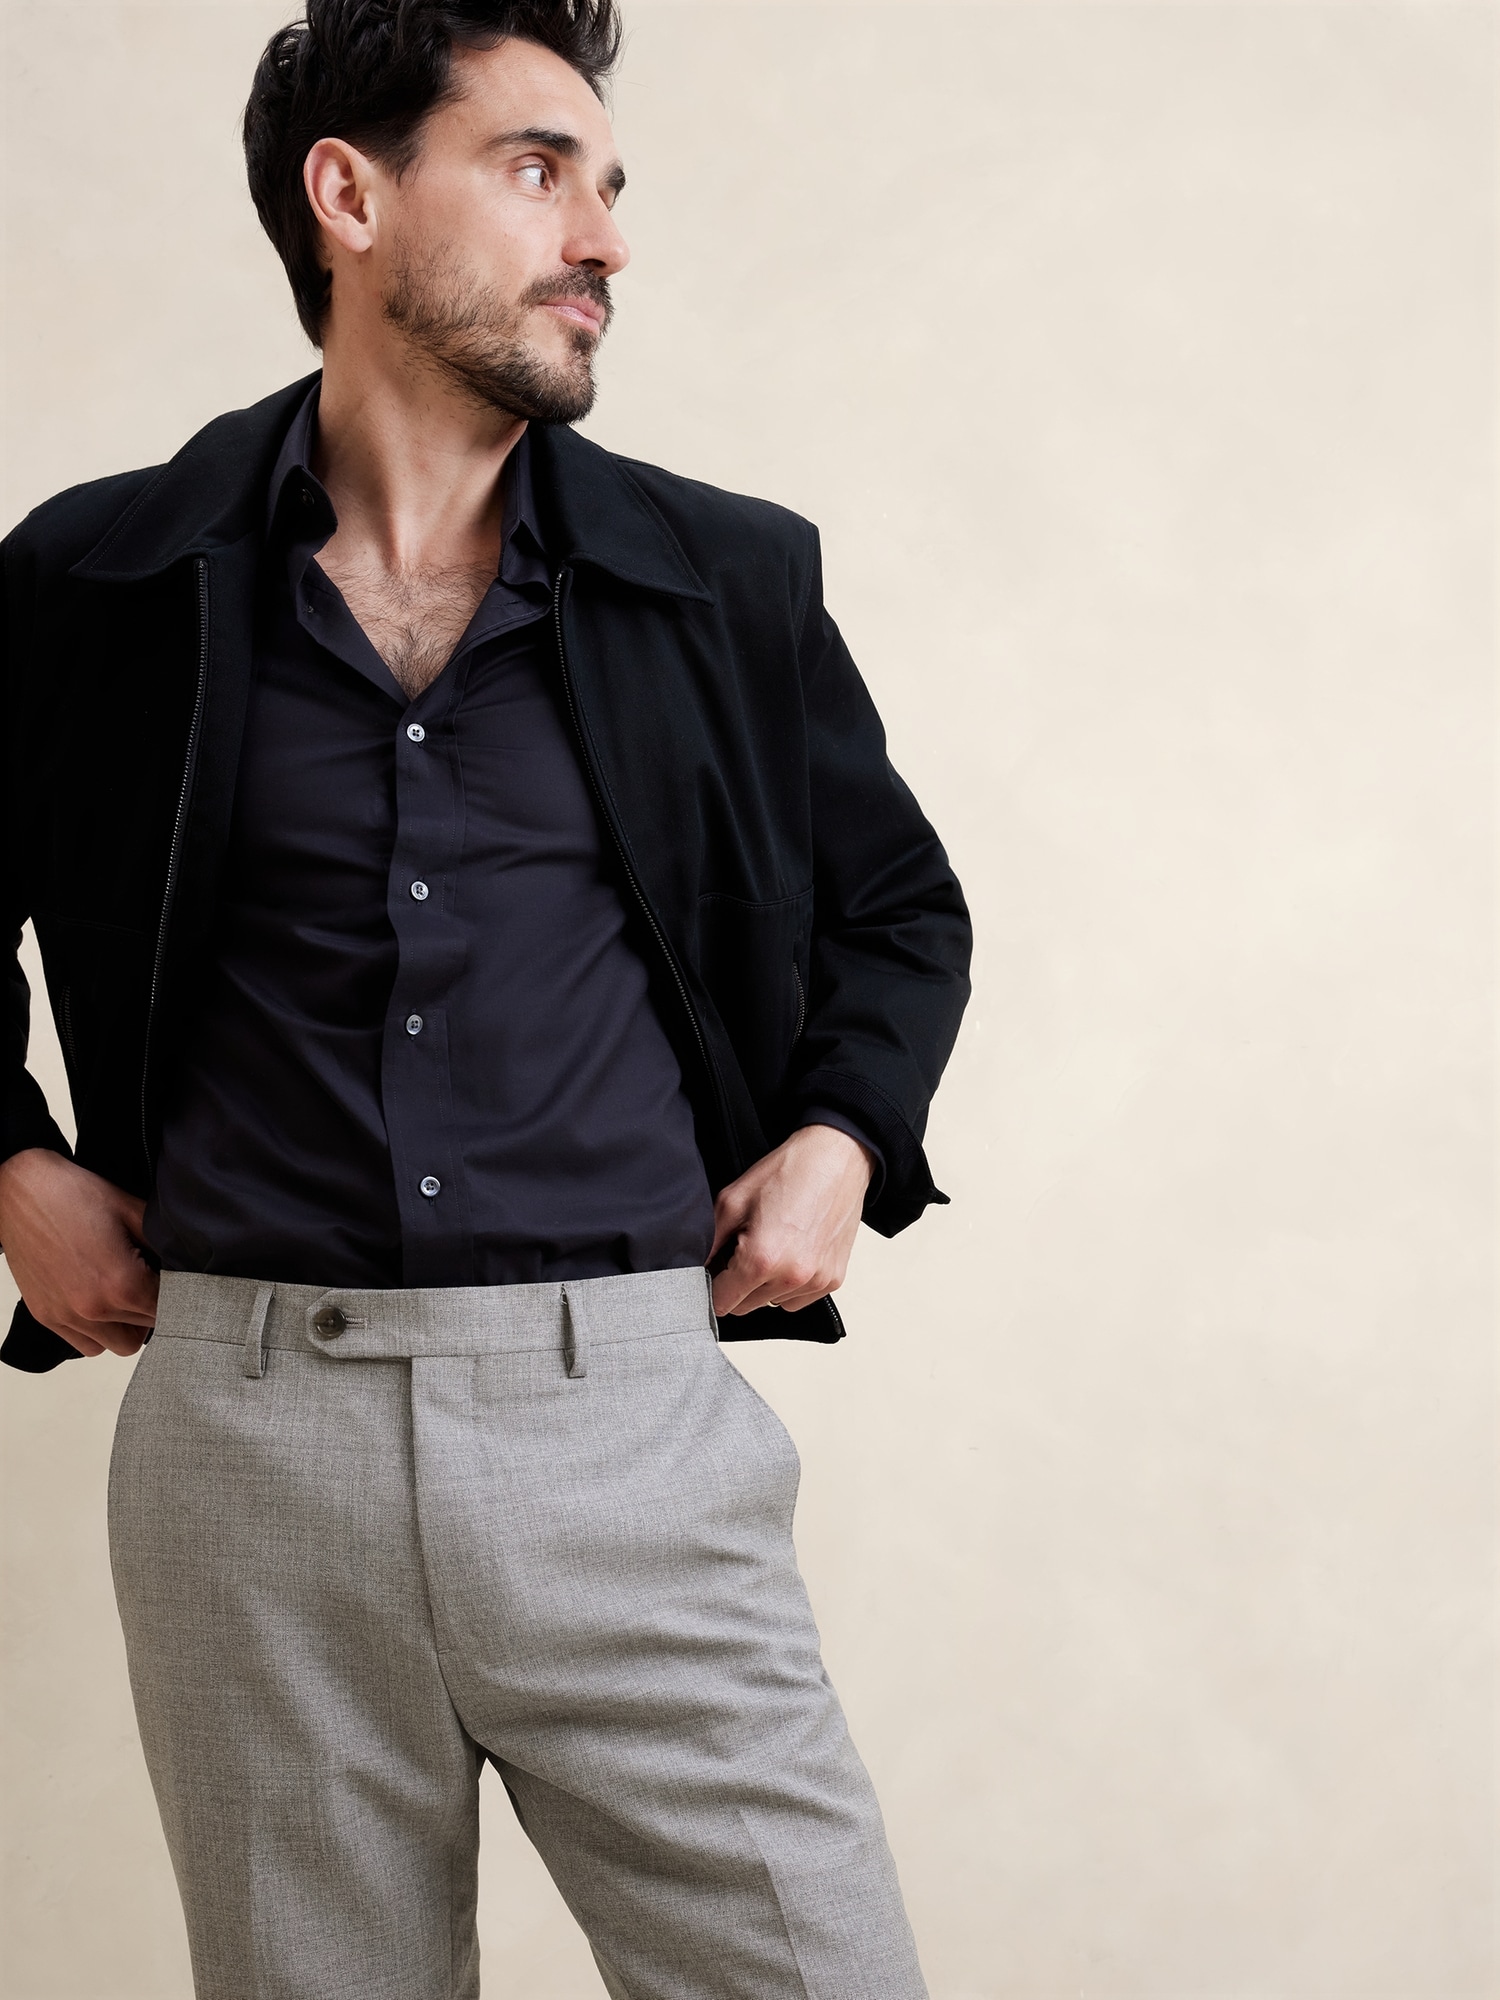 Pantalon de complet en tissu italien exclusif Rustico